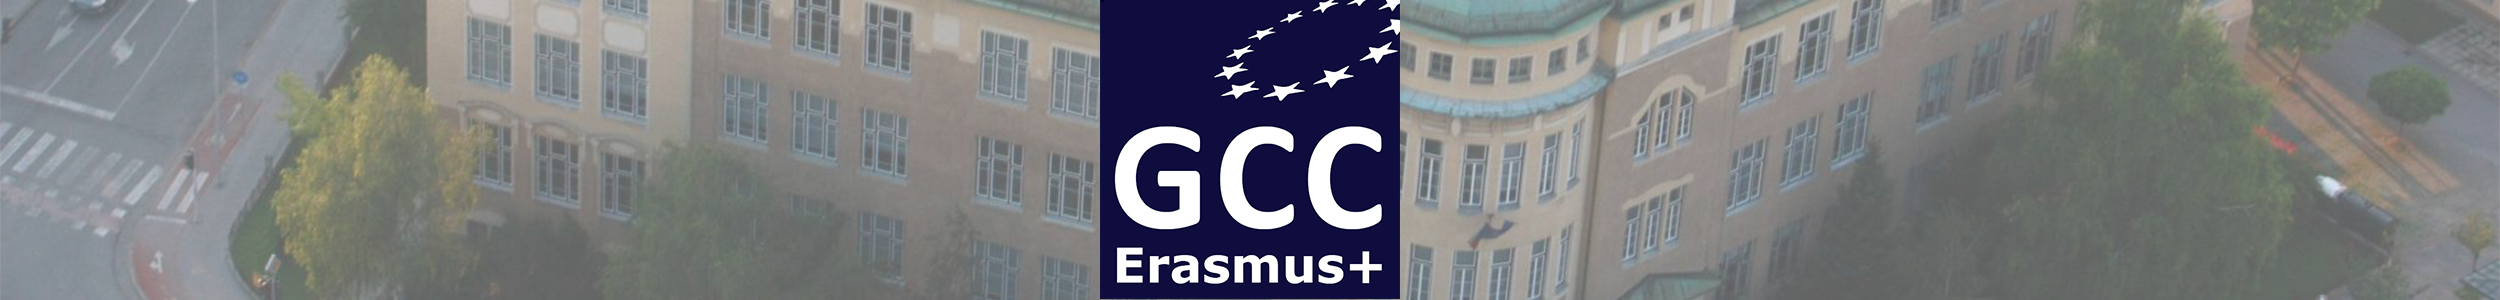 Erasmus+ GCC